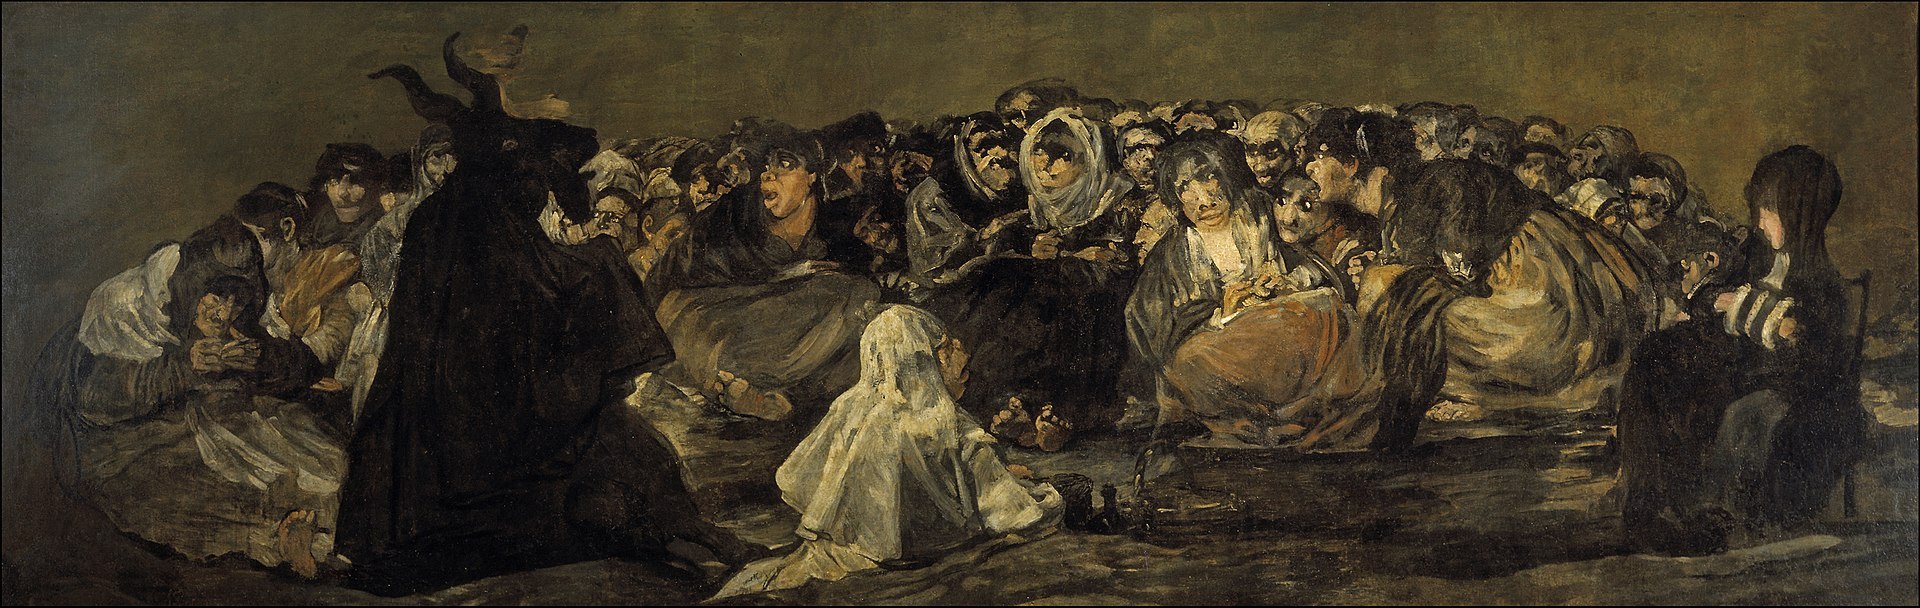 西班牙画家戈雅的"黑暗浪漫主义",不喜慎入!